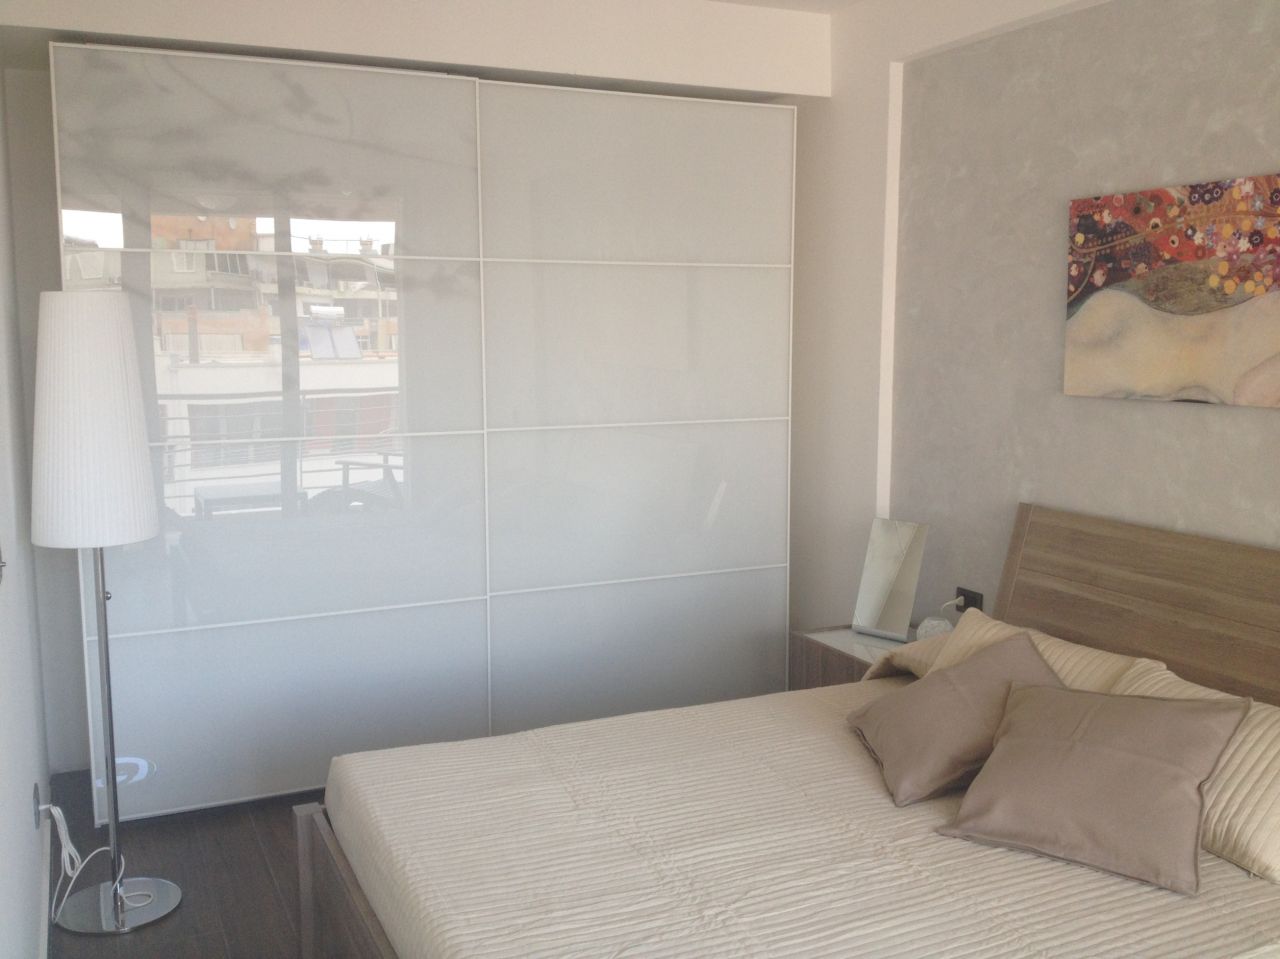 Appartamento lussoso in affitto a Tirana offerto da Albania Property Group 